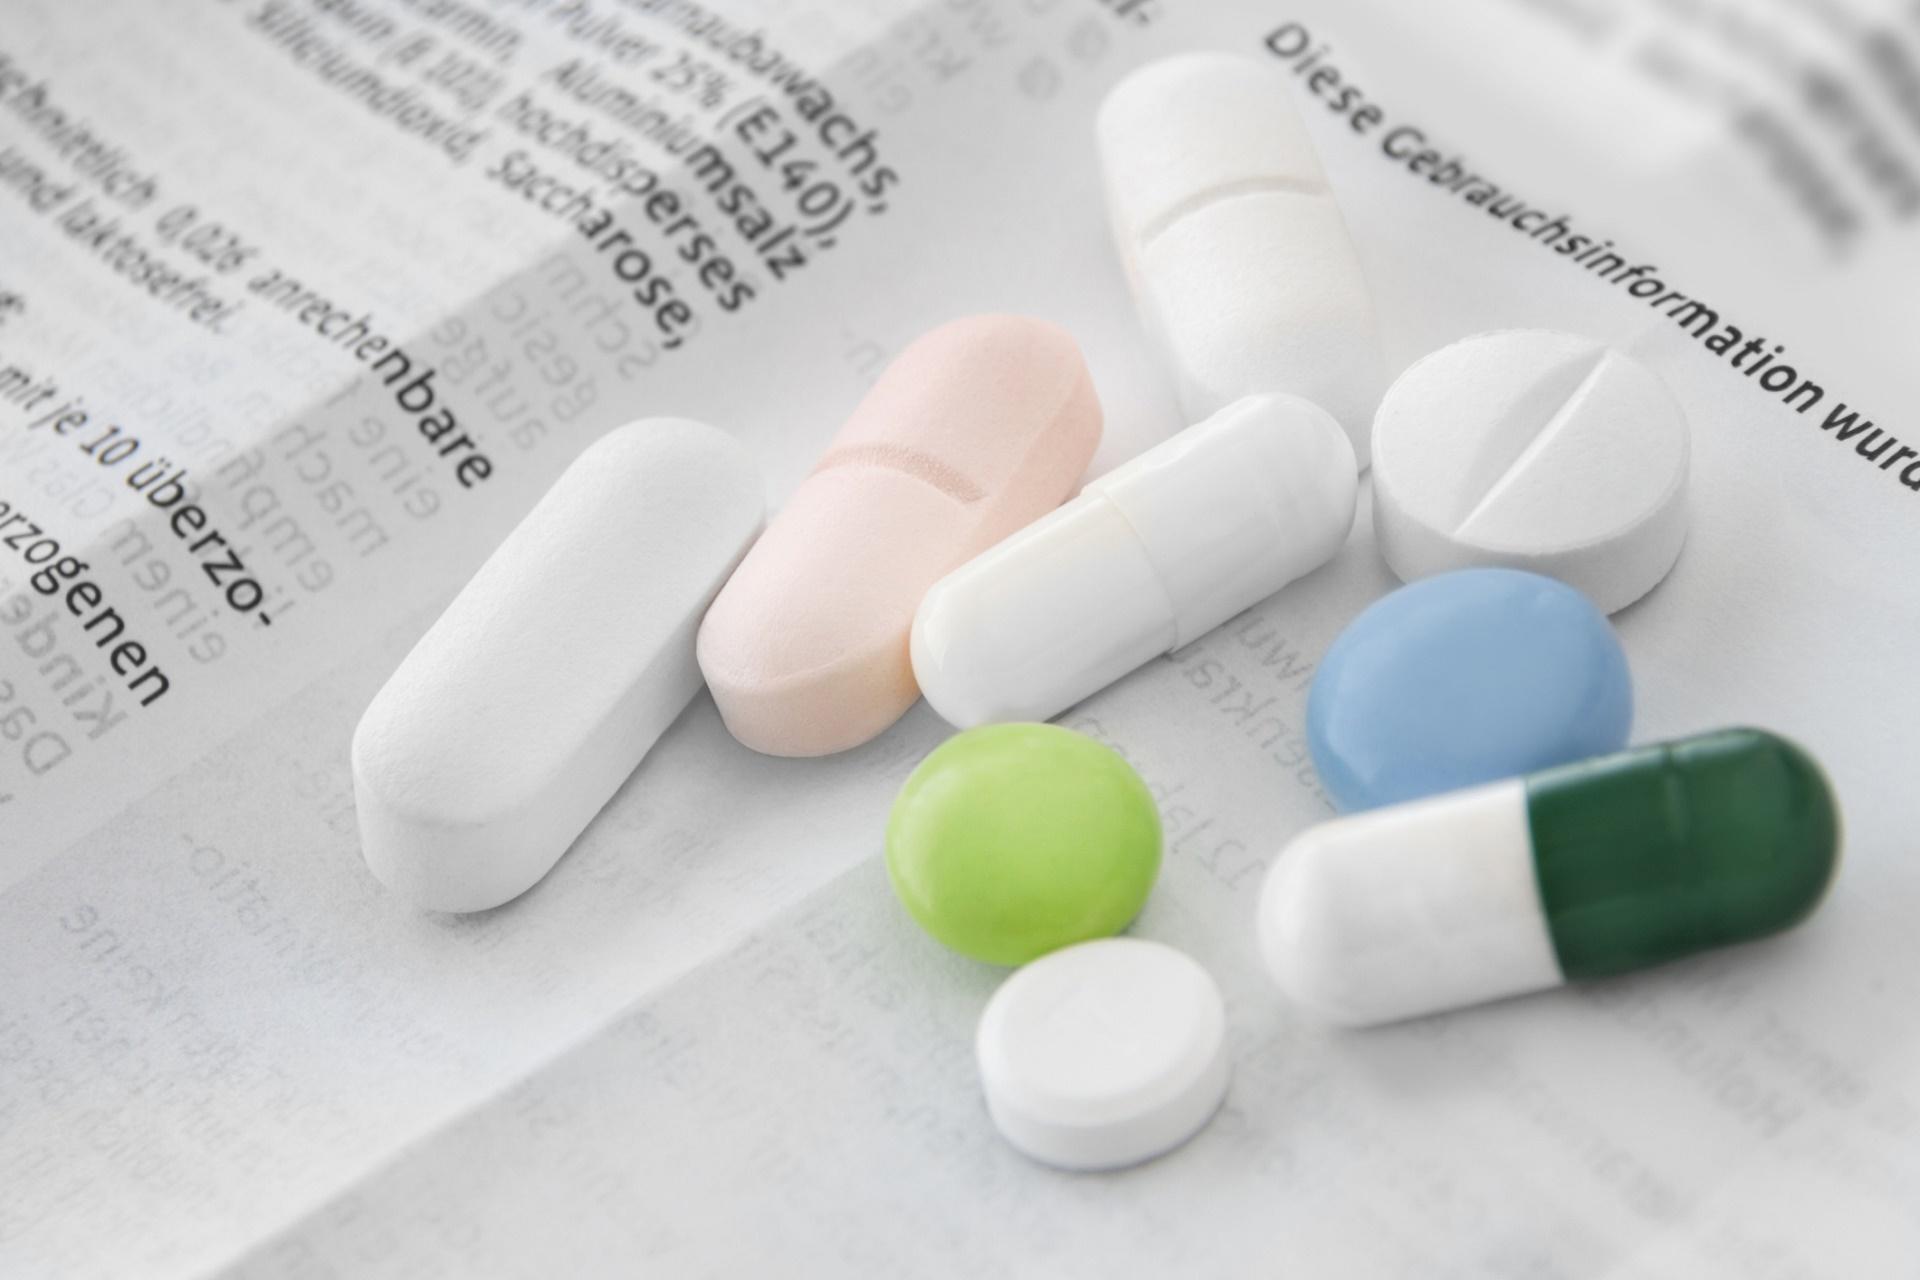 Medikamente und deutsche Packungsbeilage Hintergrund der Nebenwirkungen